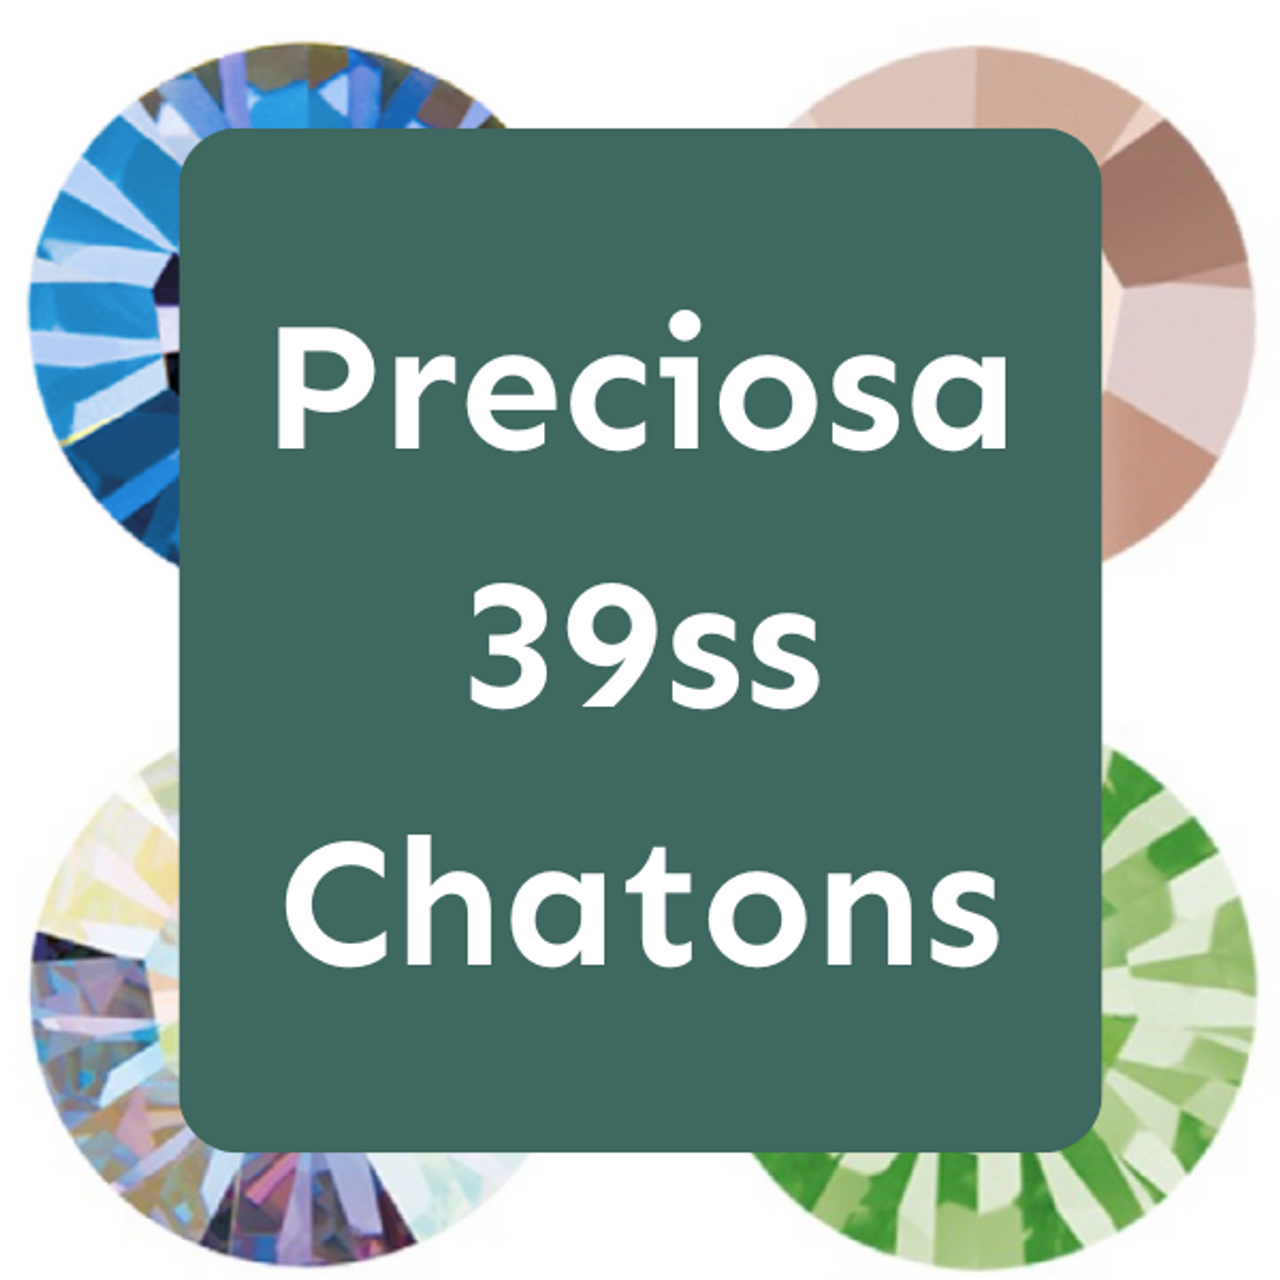 39ss Chatons (Preciosa)